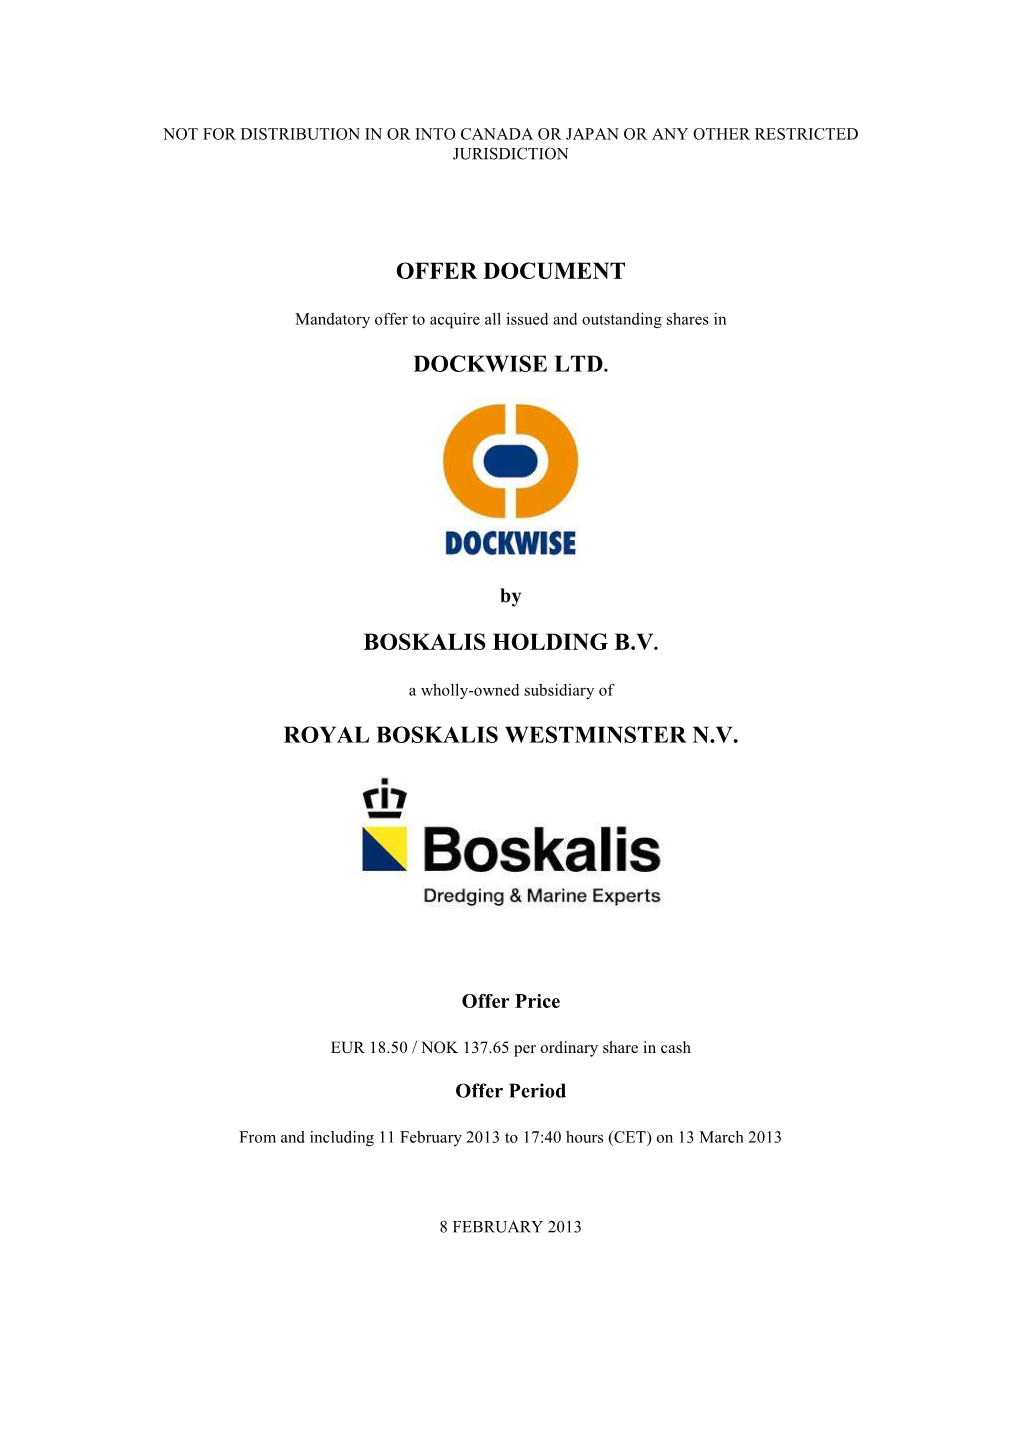 Offer Document Dockwise Ltd. Boskalis Holding B.V. Royal